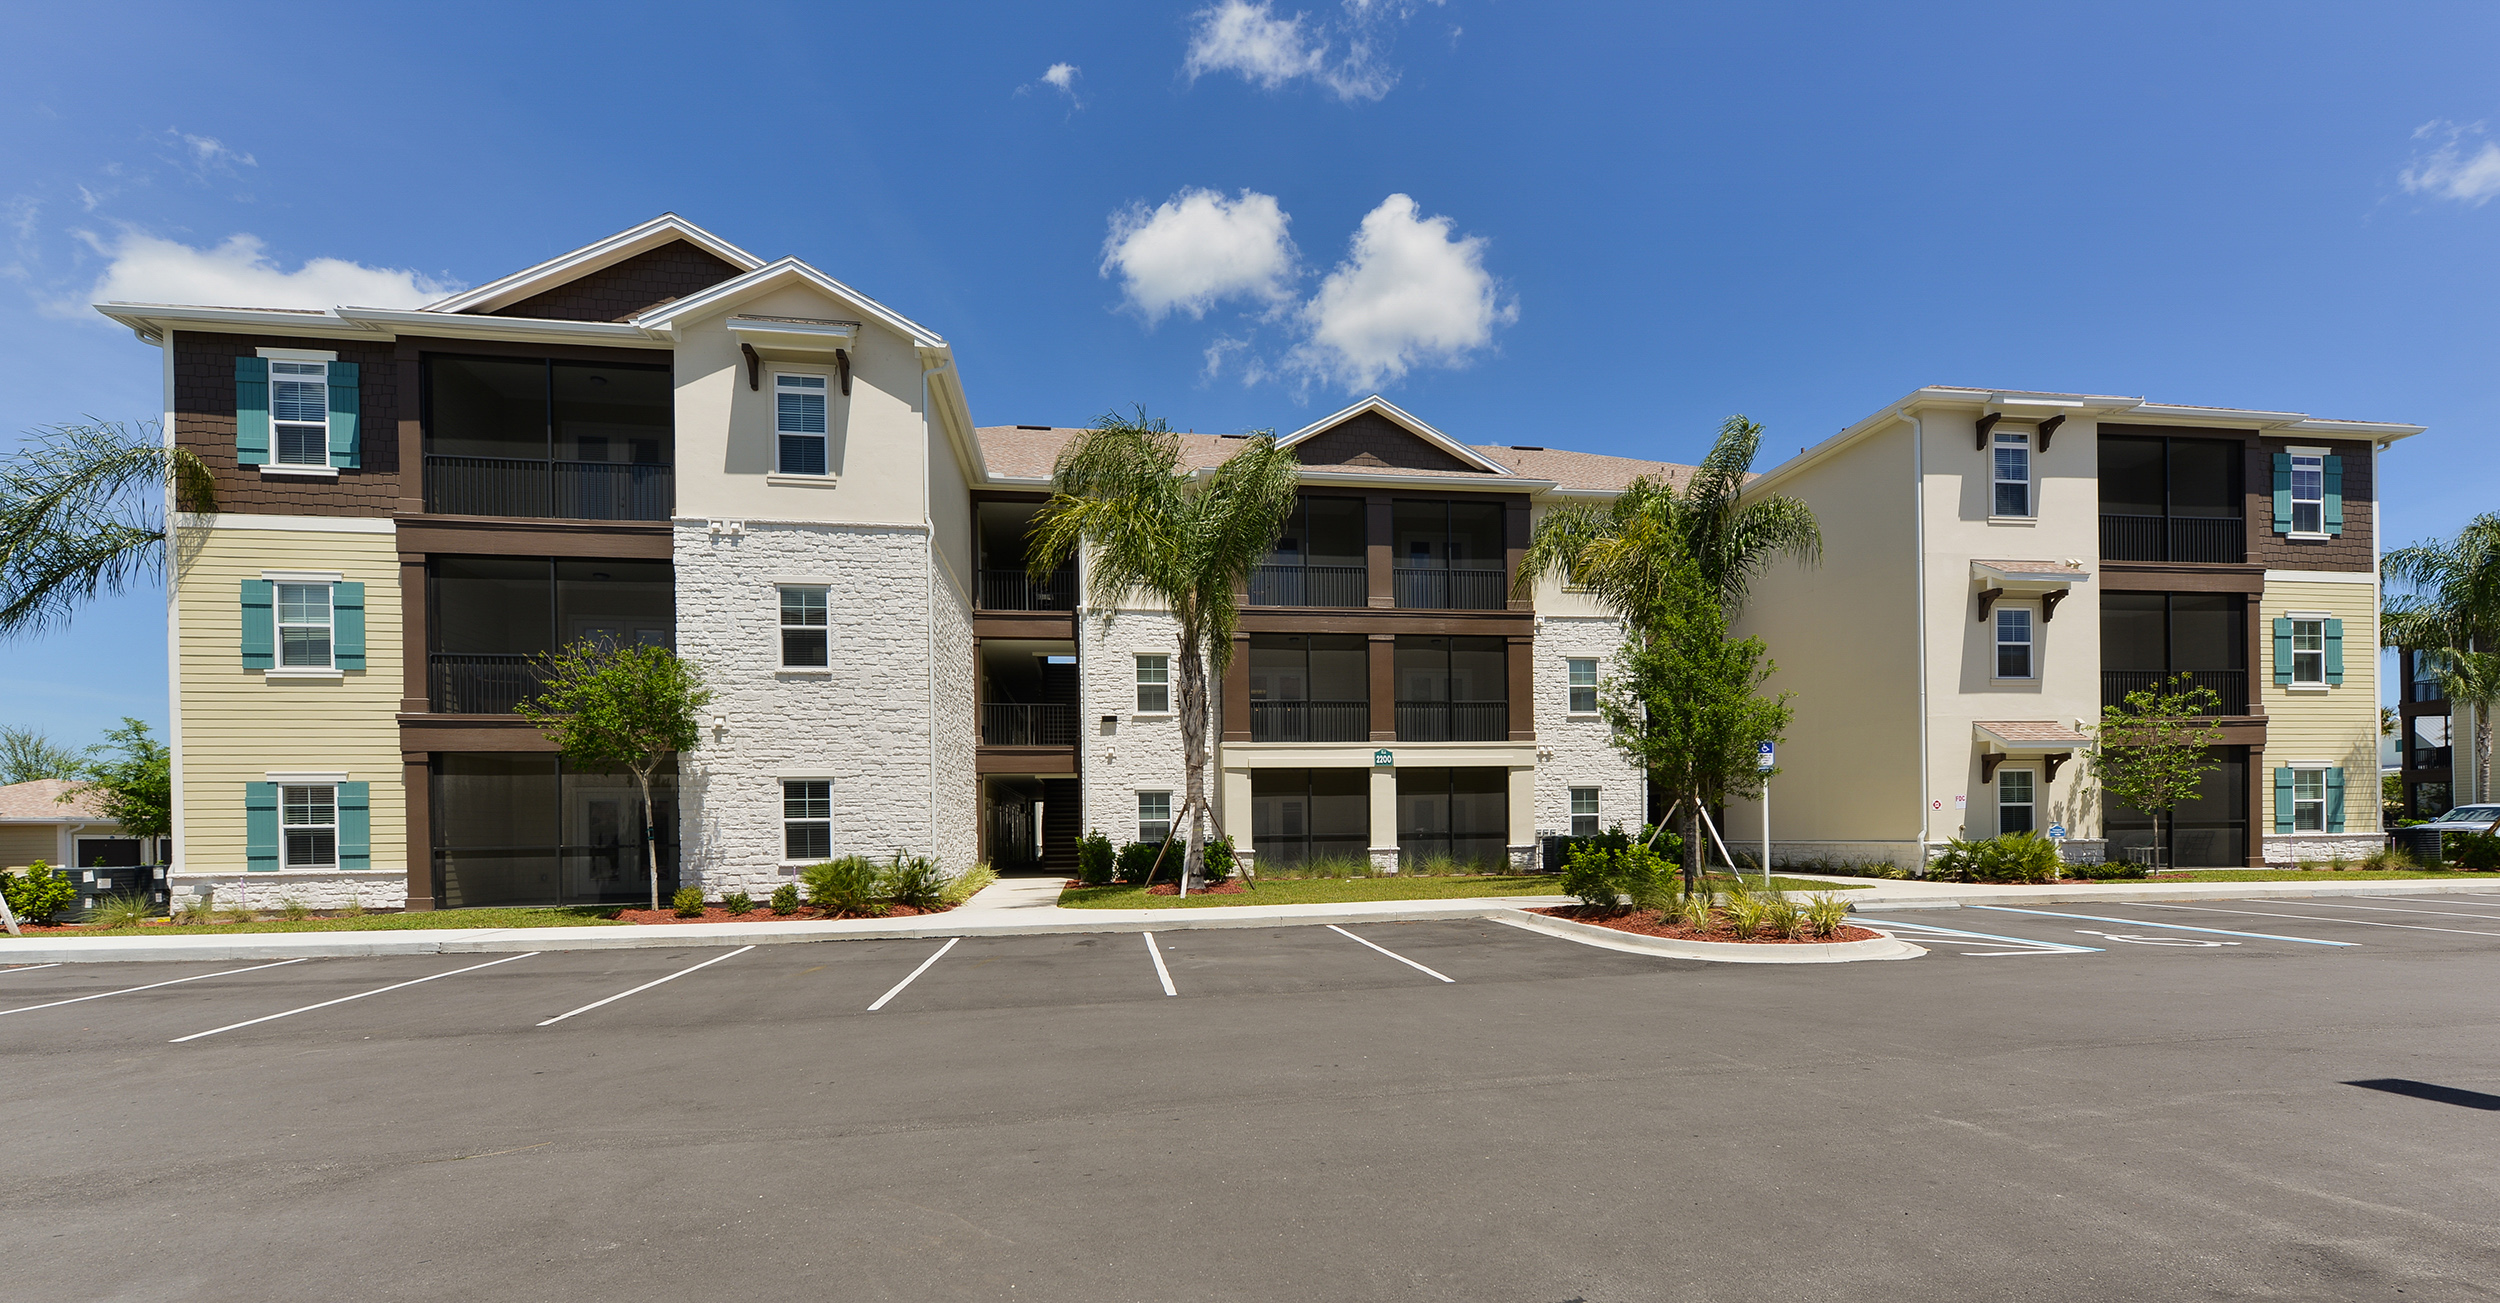 Multi level apartment building in Florida